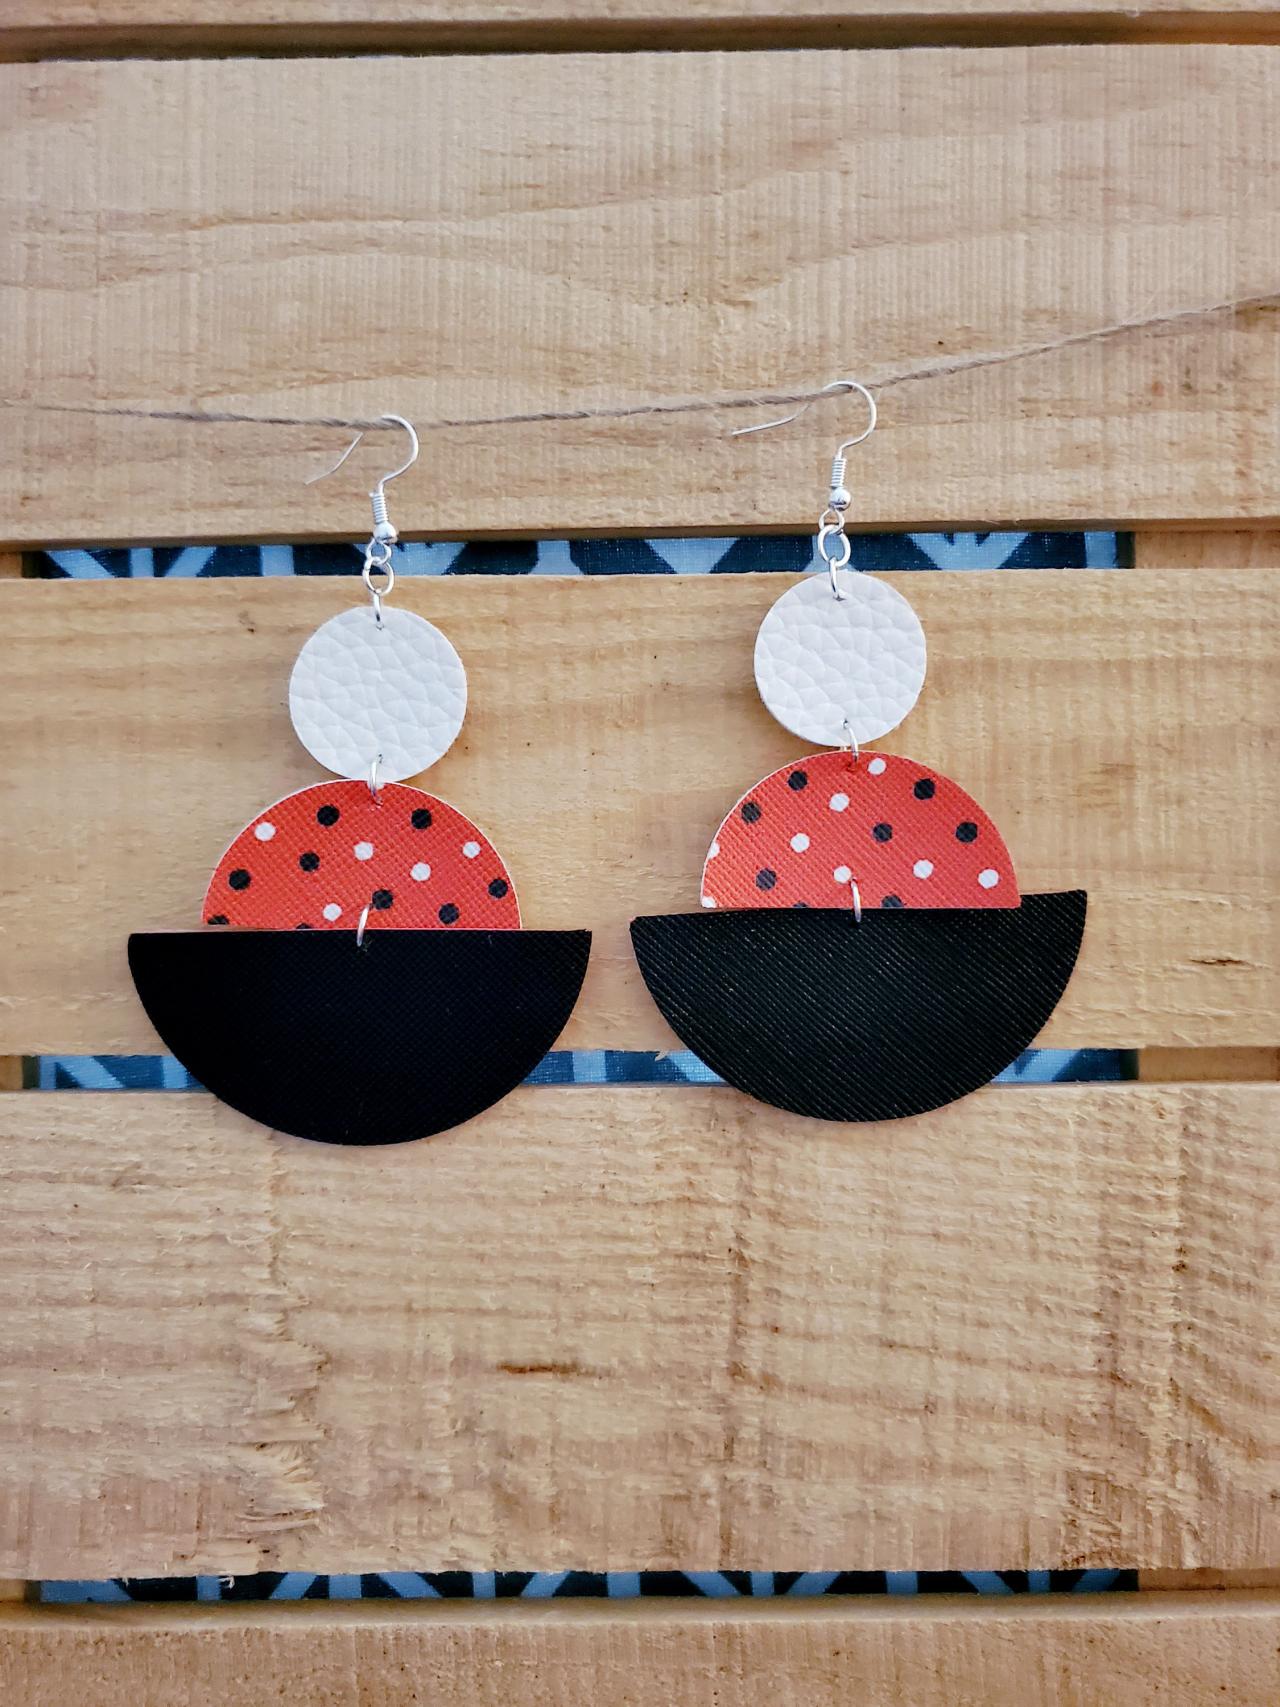 Geometric Leather Earrings, Polka Dot Jewelry, Black White Red Dangle Jewelry, Semi Circle Leather Earrings, Round Earrings, Boho Chic